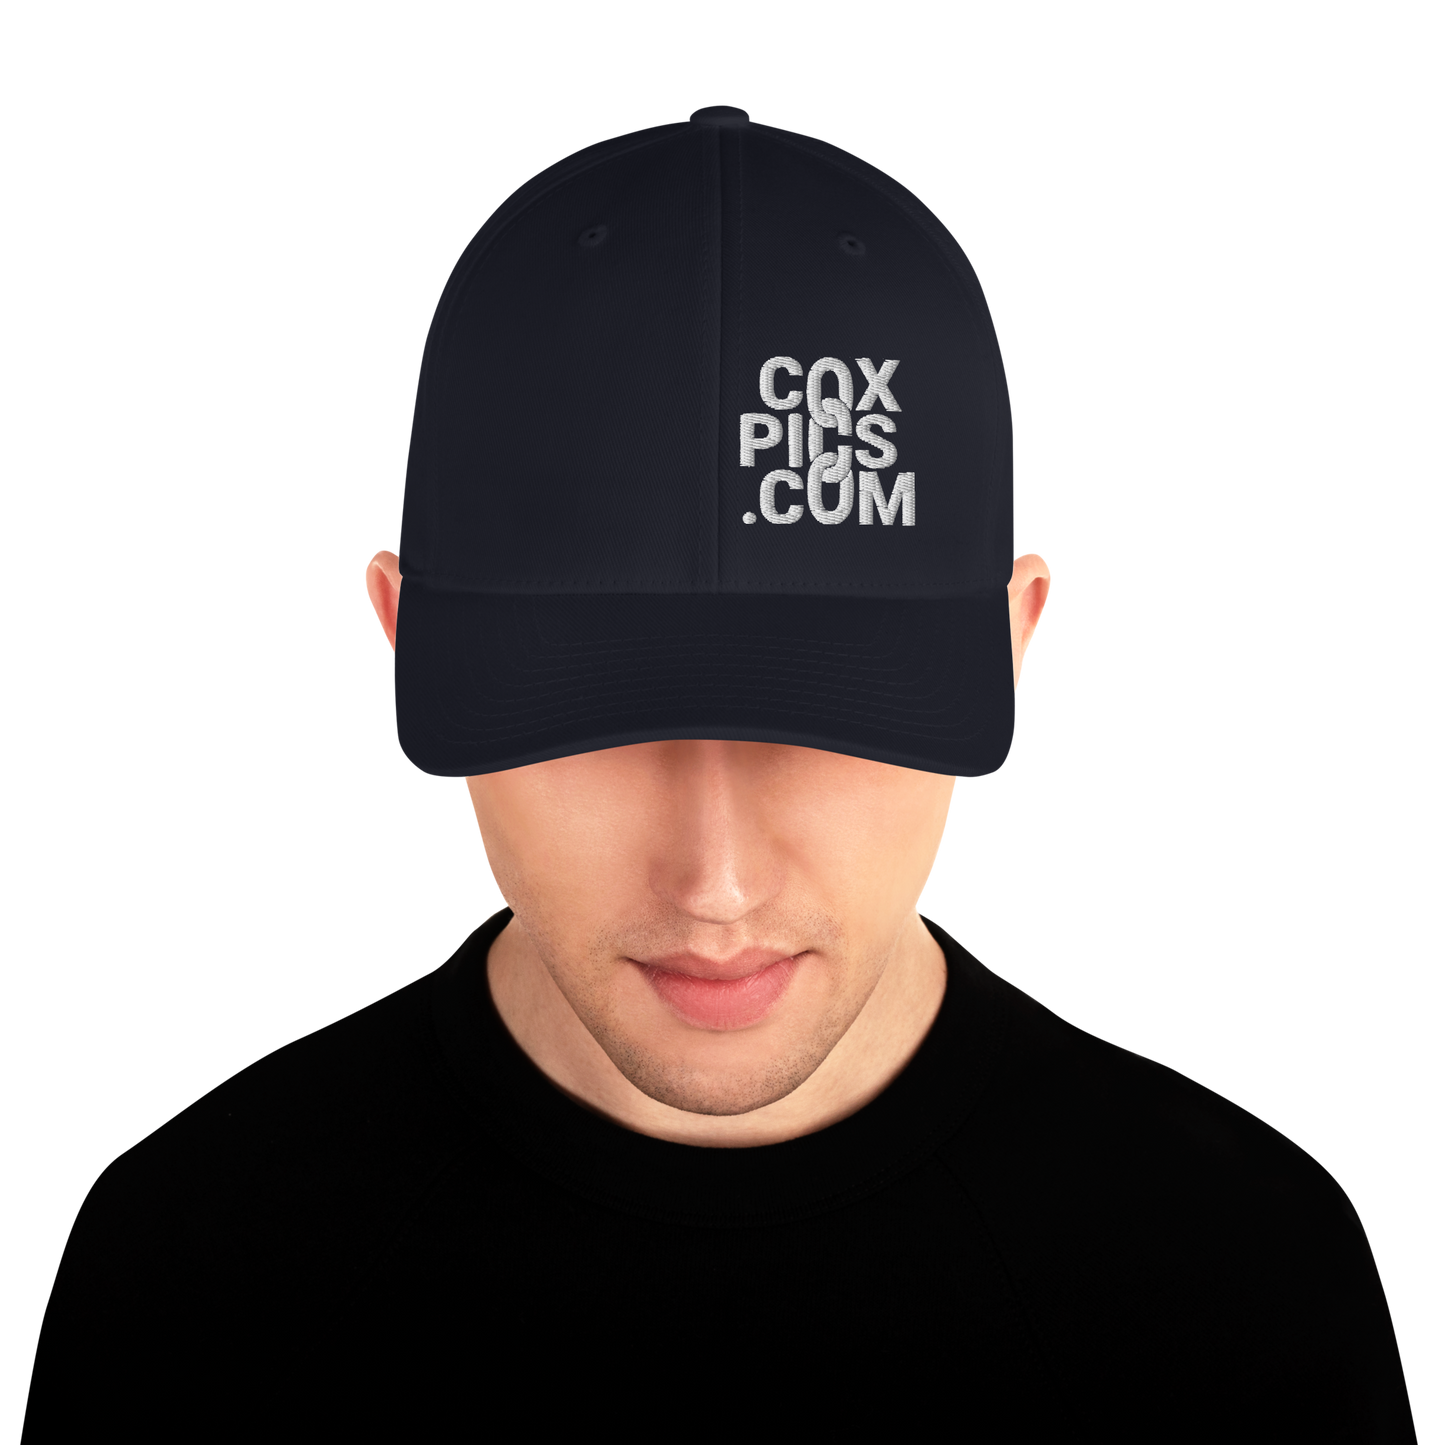 CoxPics.com Logo Embroidered Flexfit Structured Twill Cap (White Thread)